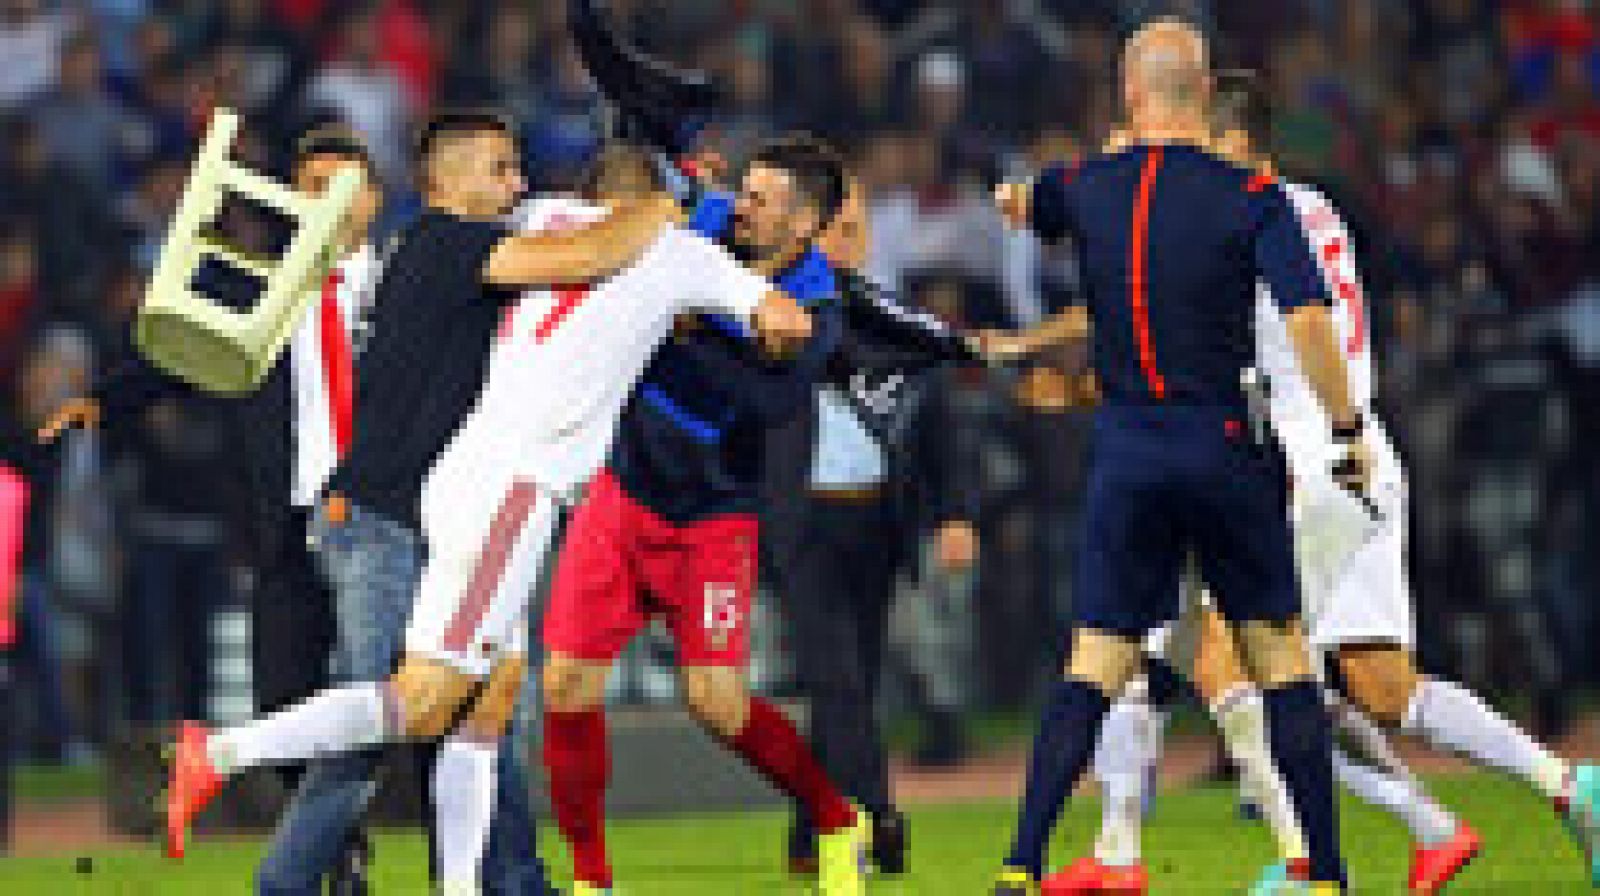 Un dron con la bandera de Albania provocó una tangana en el partido Serbia-Albania, que tuvo que ser suspendido por los disturbios. Por otra parte, Cristiano dio la victoria a Portugal y Alemania se complicó la clasificación al empatar con Irlanda.